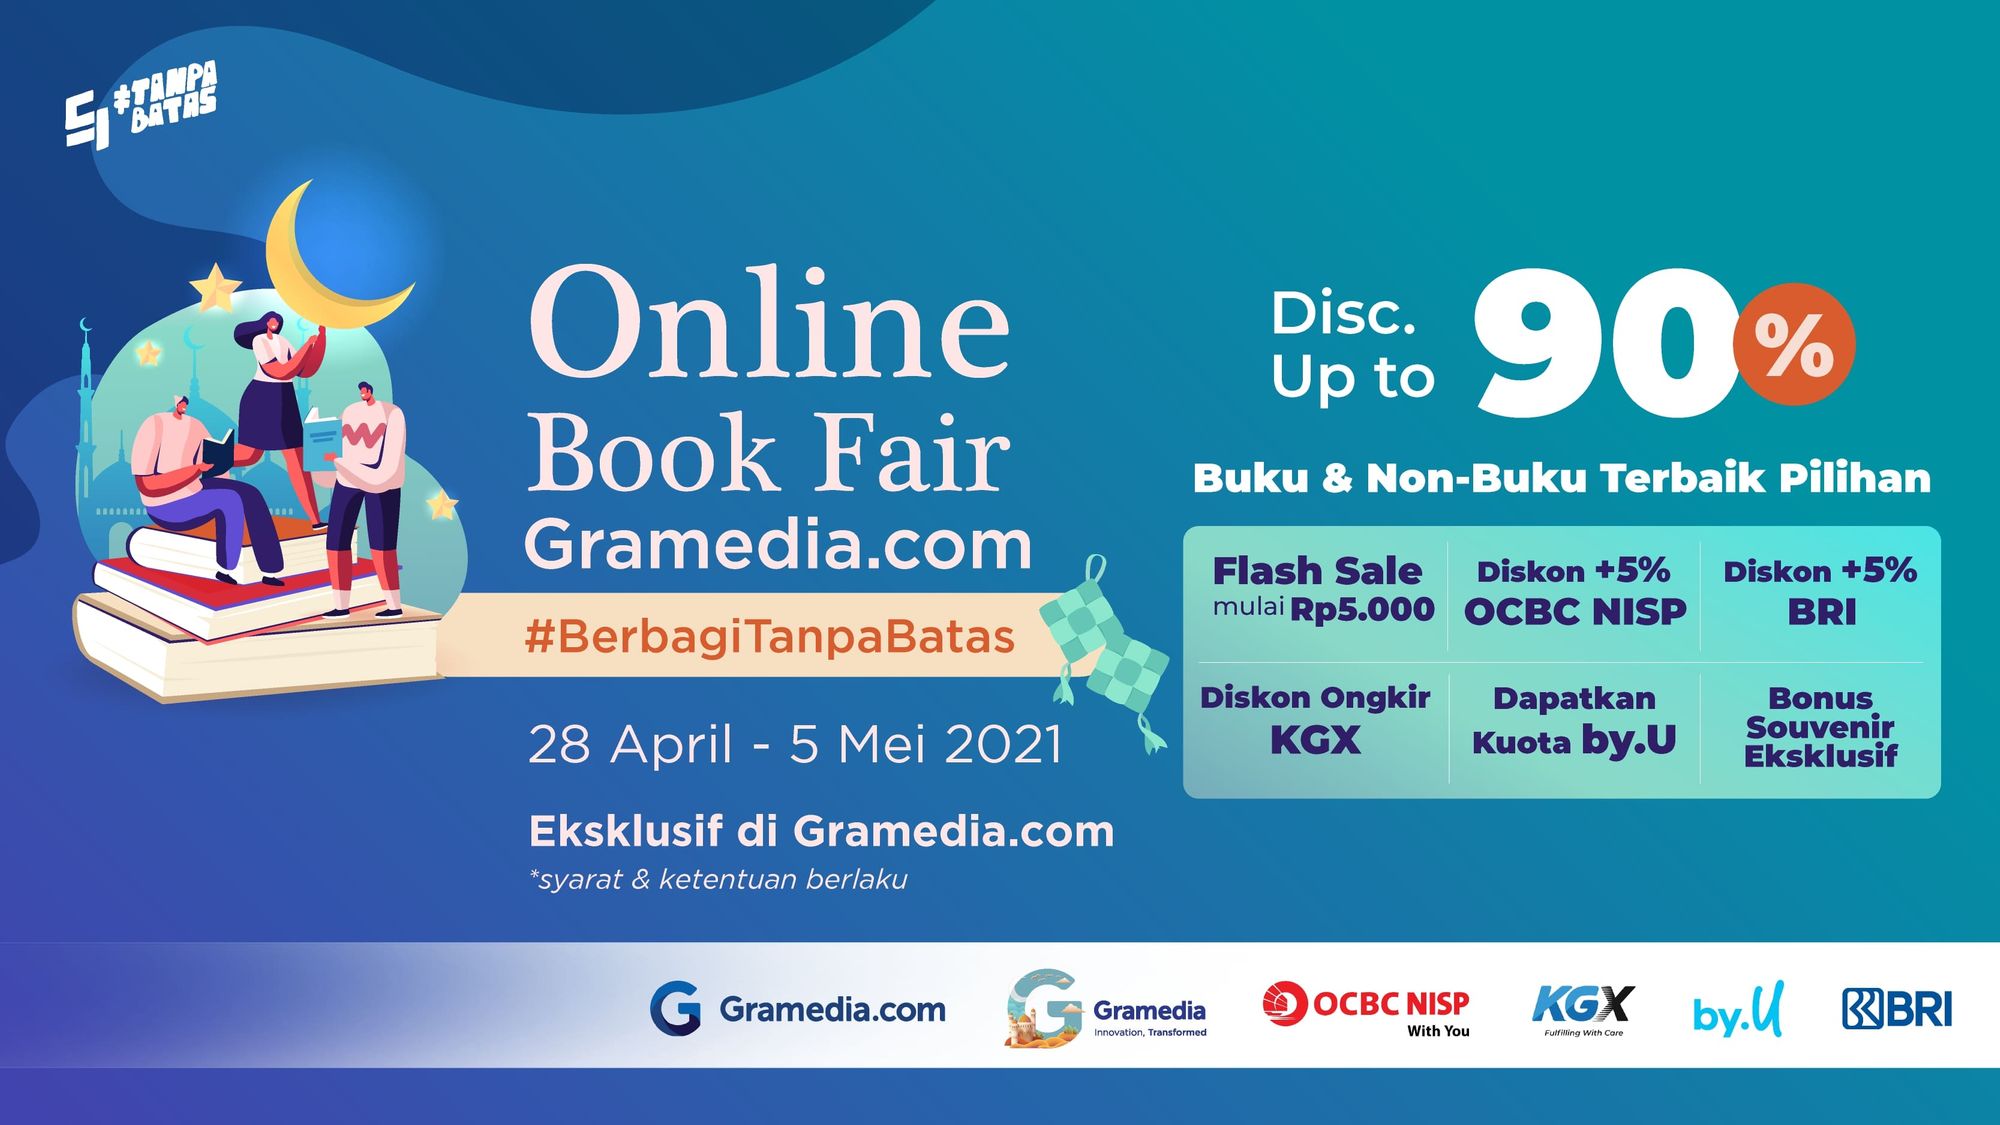 Berkah Ramadan dari Online Book Fair #BerbagiTanpaBatas, Diskon Hingga 90%!